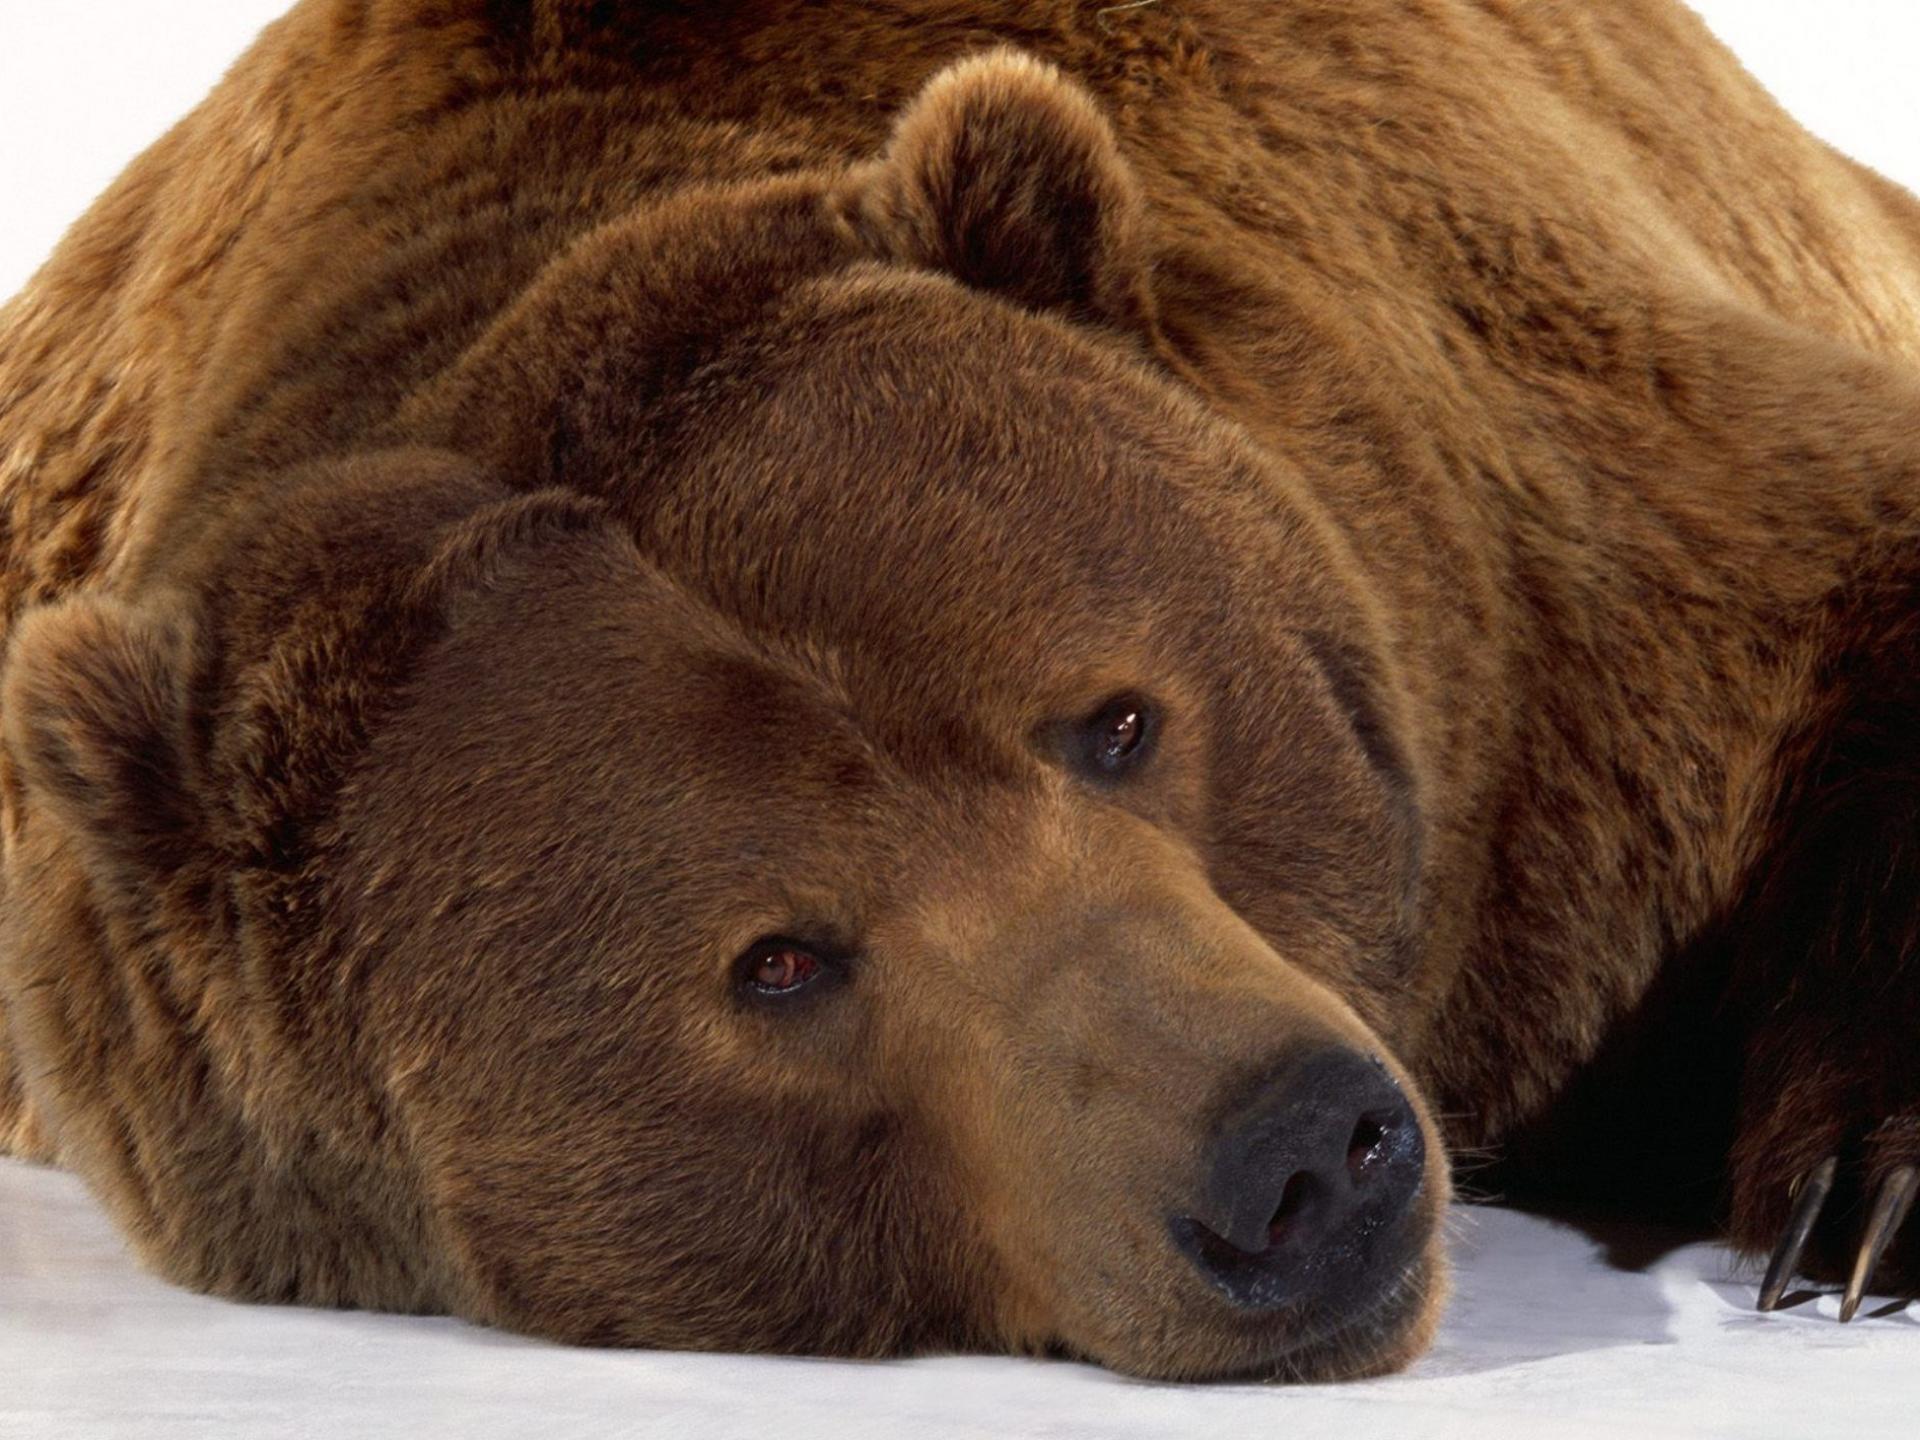 Скачать обои бесплатно Животные, Медведи, Медведь картинка на рабочий стол ПК